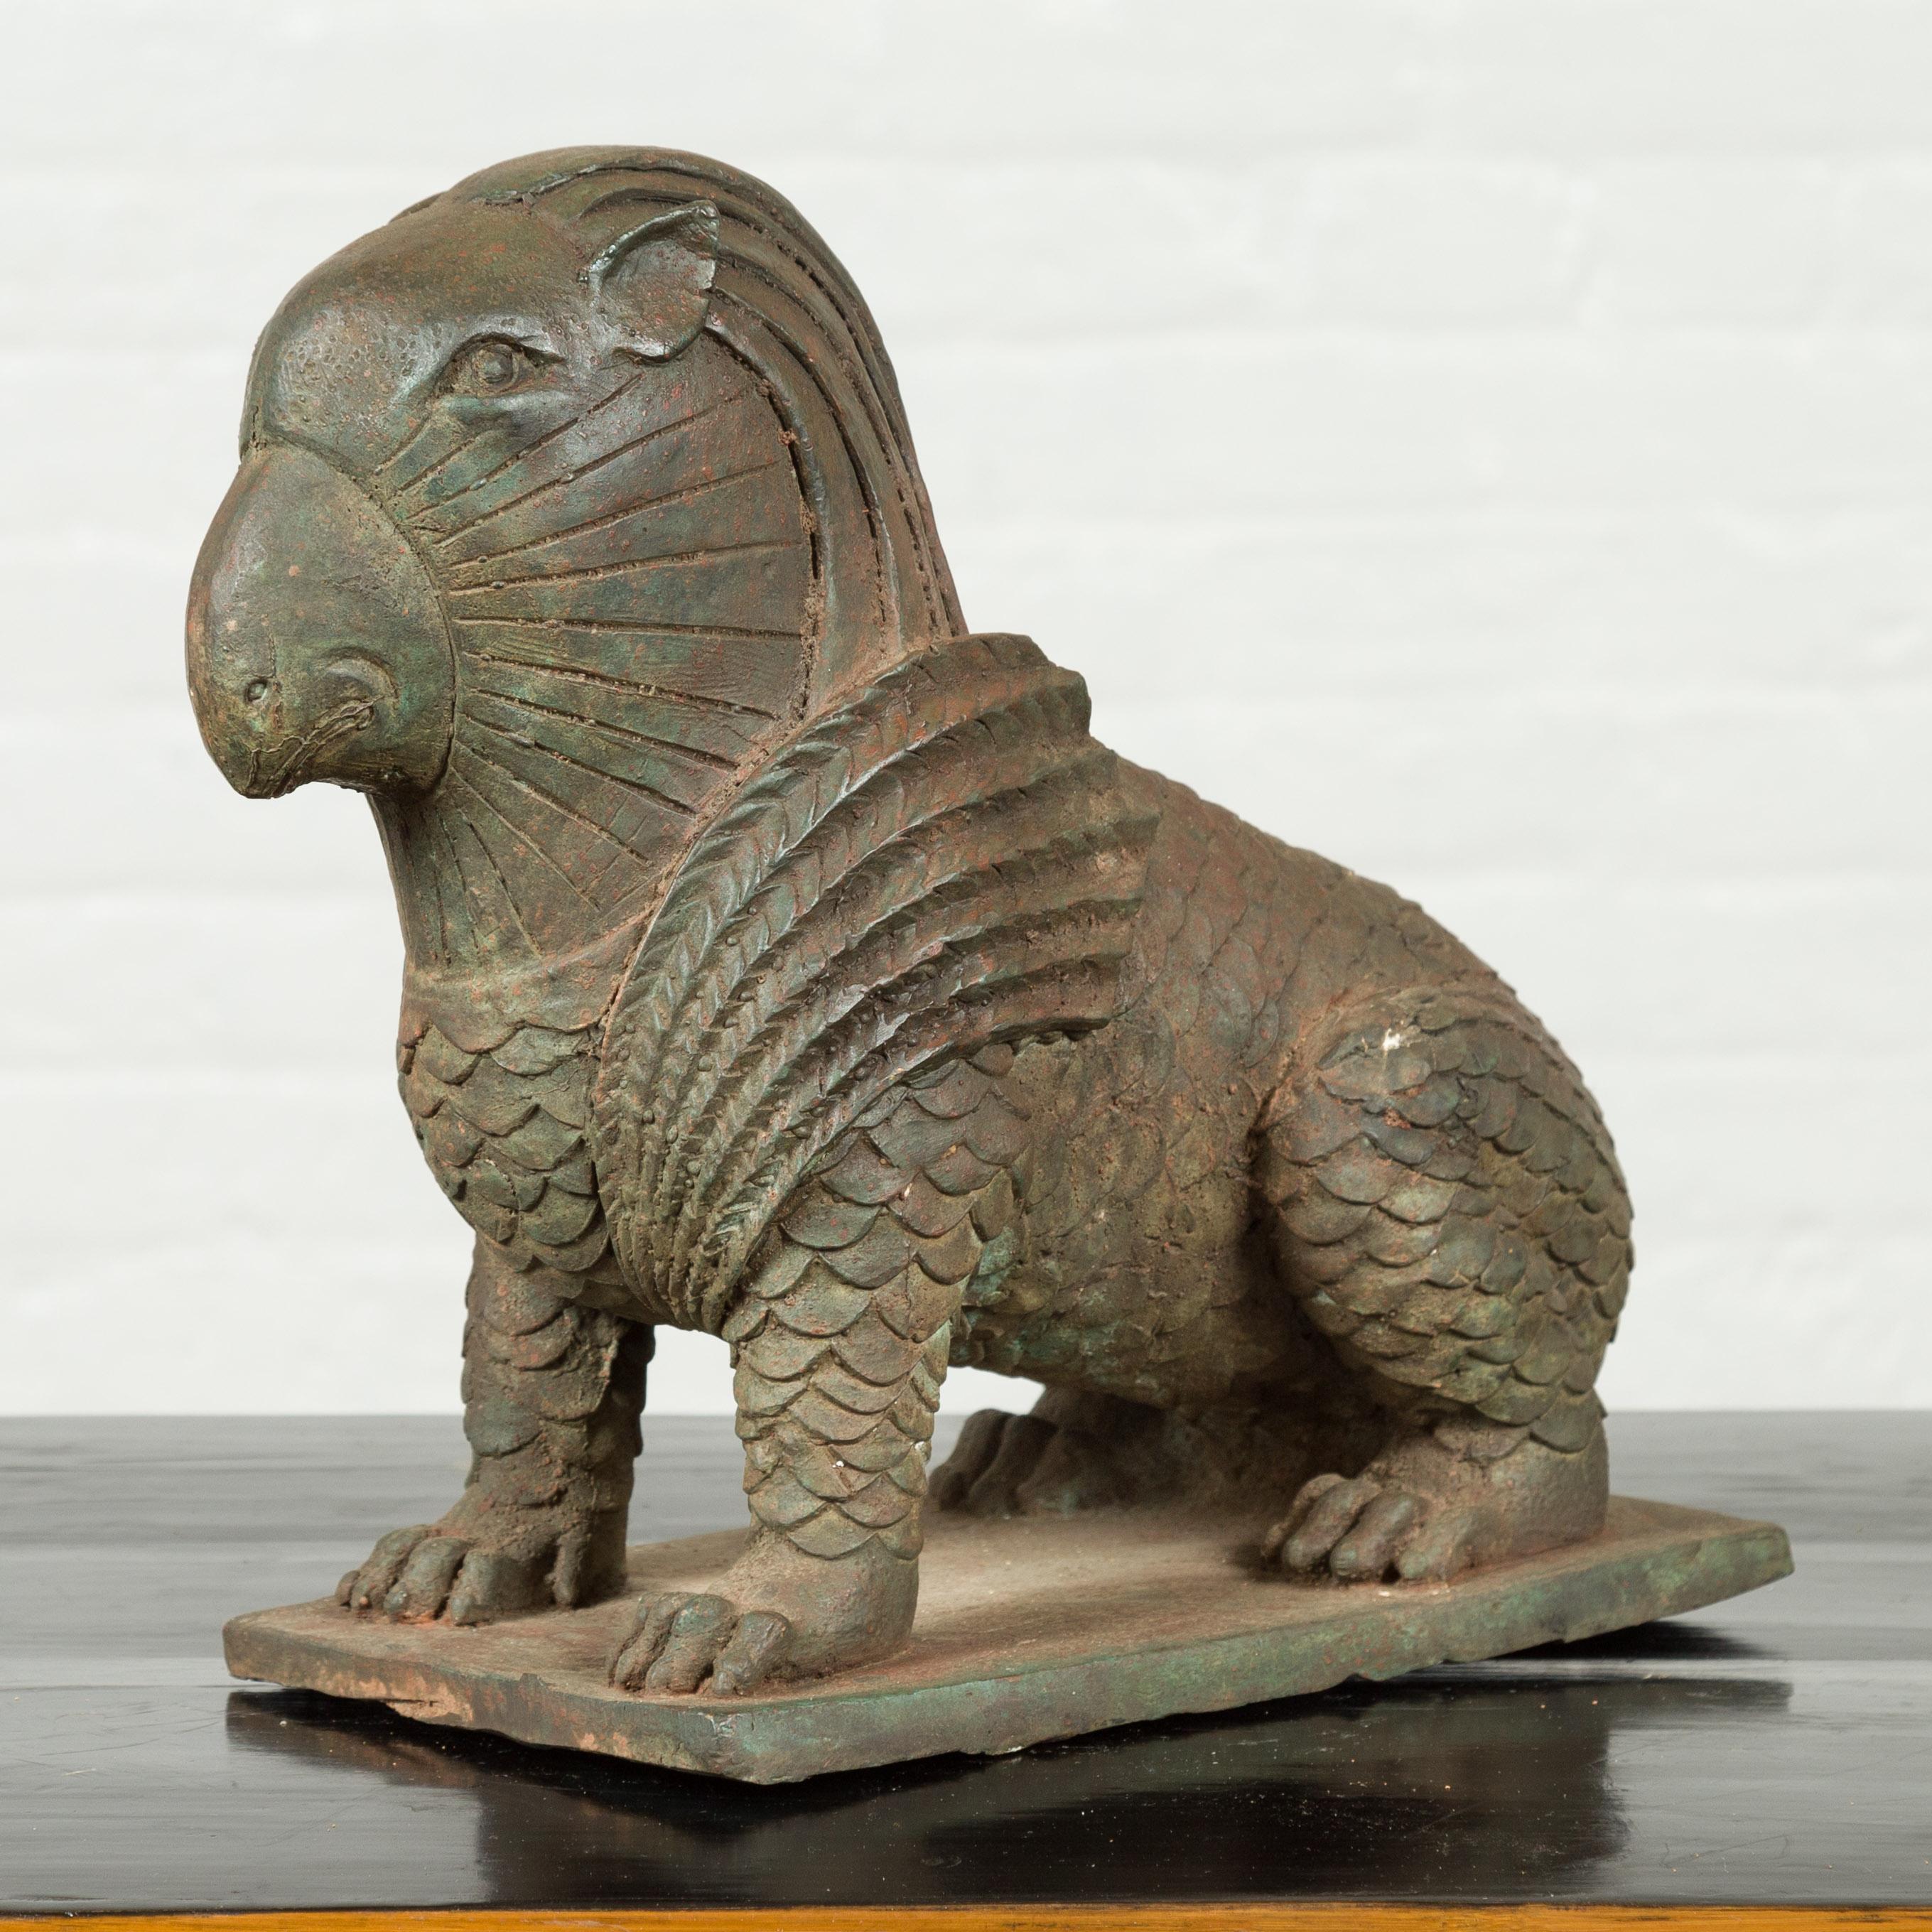 Une sculpture vintage d'animal mythique en bronze du milieu du 20ème siècle avec une patine verde. Créée avec la technique traditionnelle de la cire perdue qui permet une grande précision et finesse dans les détails, cette sculpture animale attire